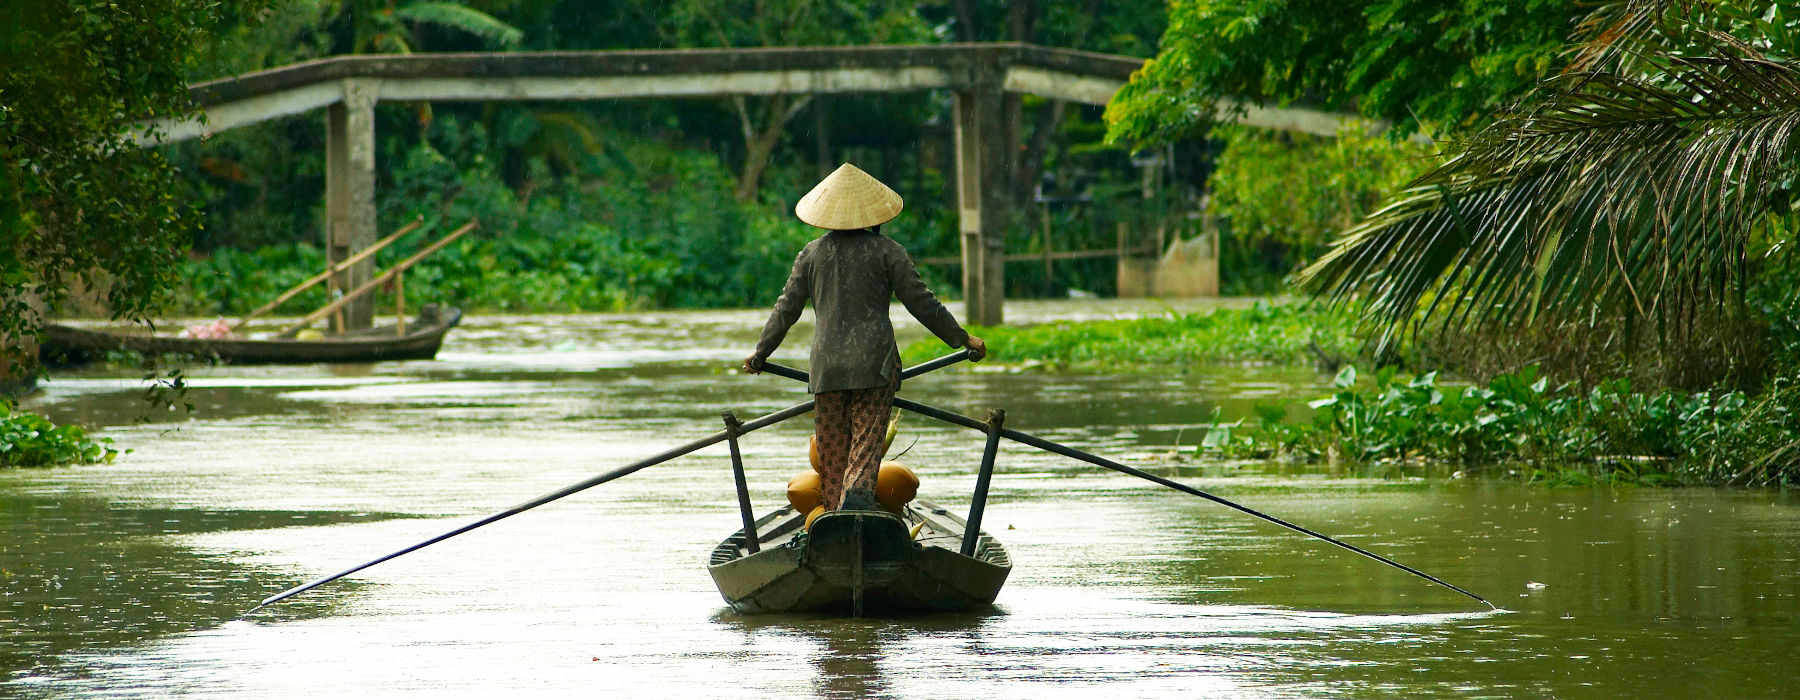 Rowing sampan at the Mekong river 